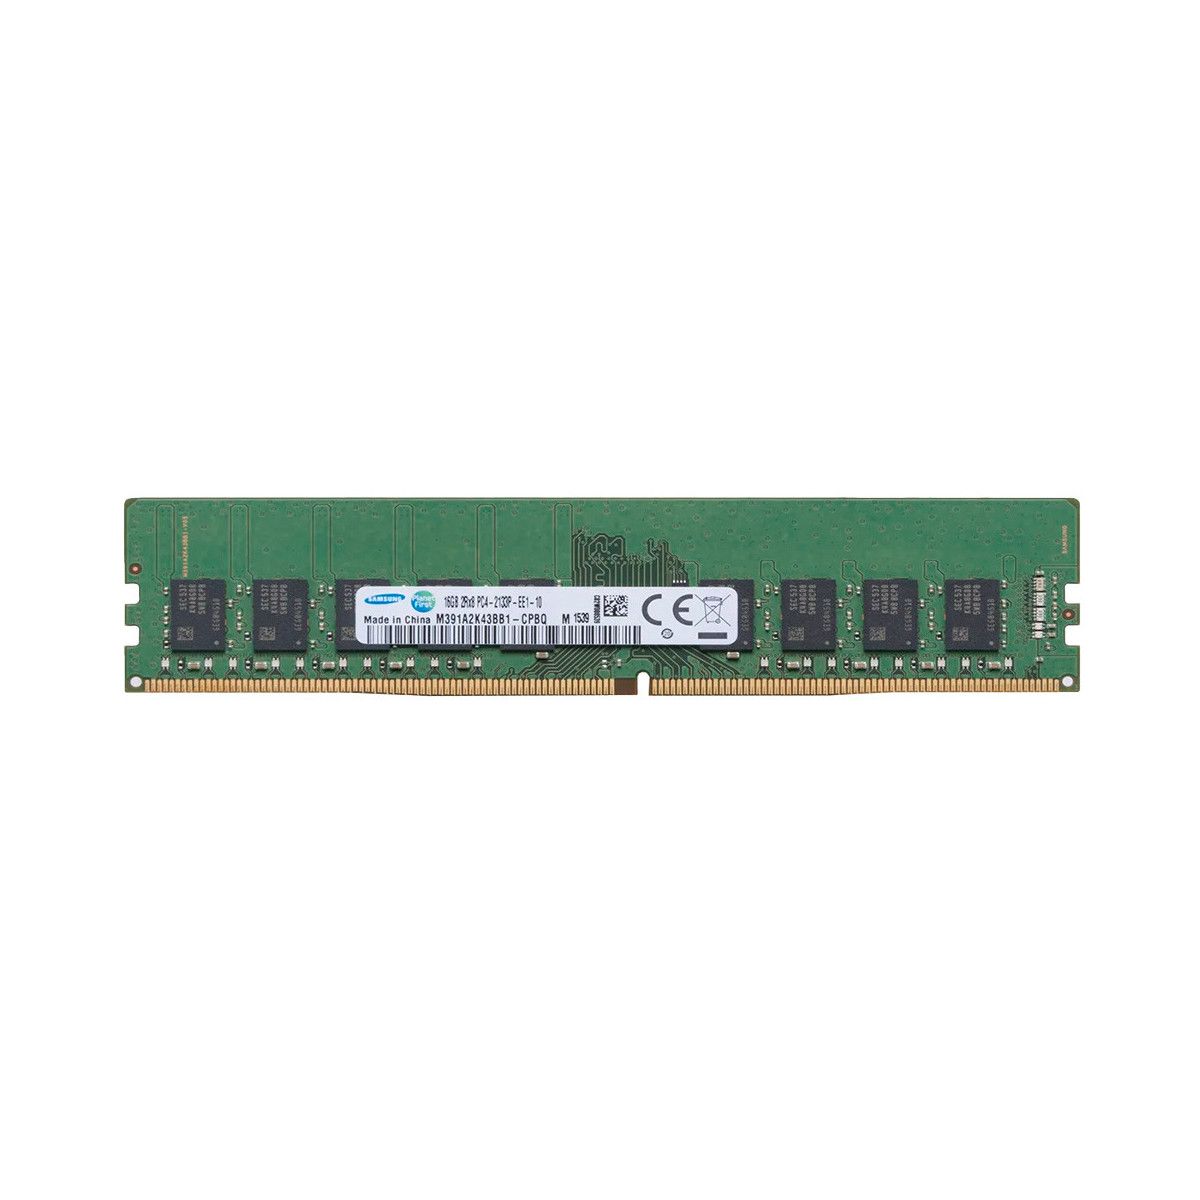 46W0817-MS -JA- Memstar 1x 16GB DDR4-2133 ECC UDIMM PC4-17000P-E